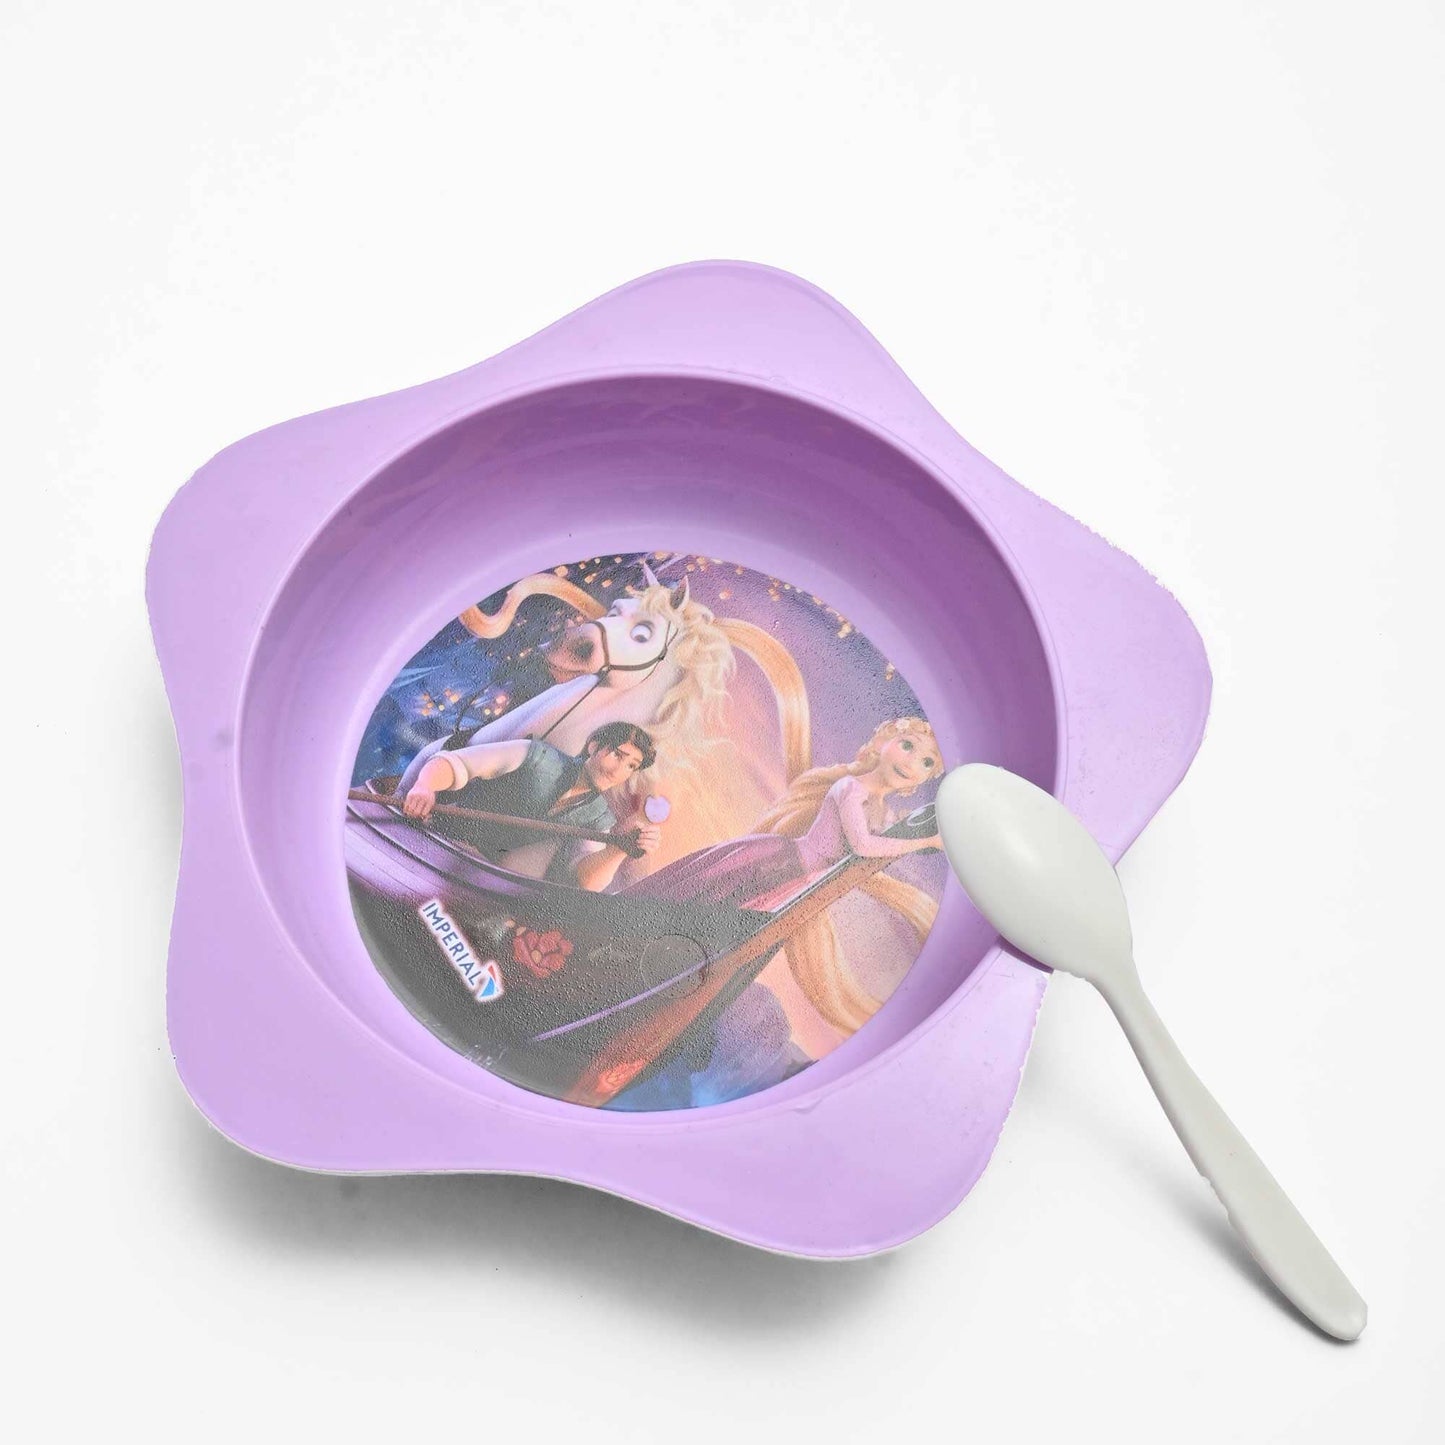 Aqua Plast Kid's Multi Purpose Mini Plastic Bowl Crockery RAM Purple 